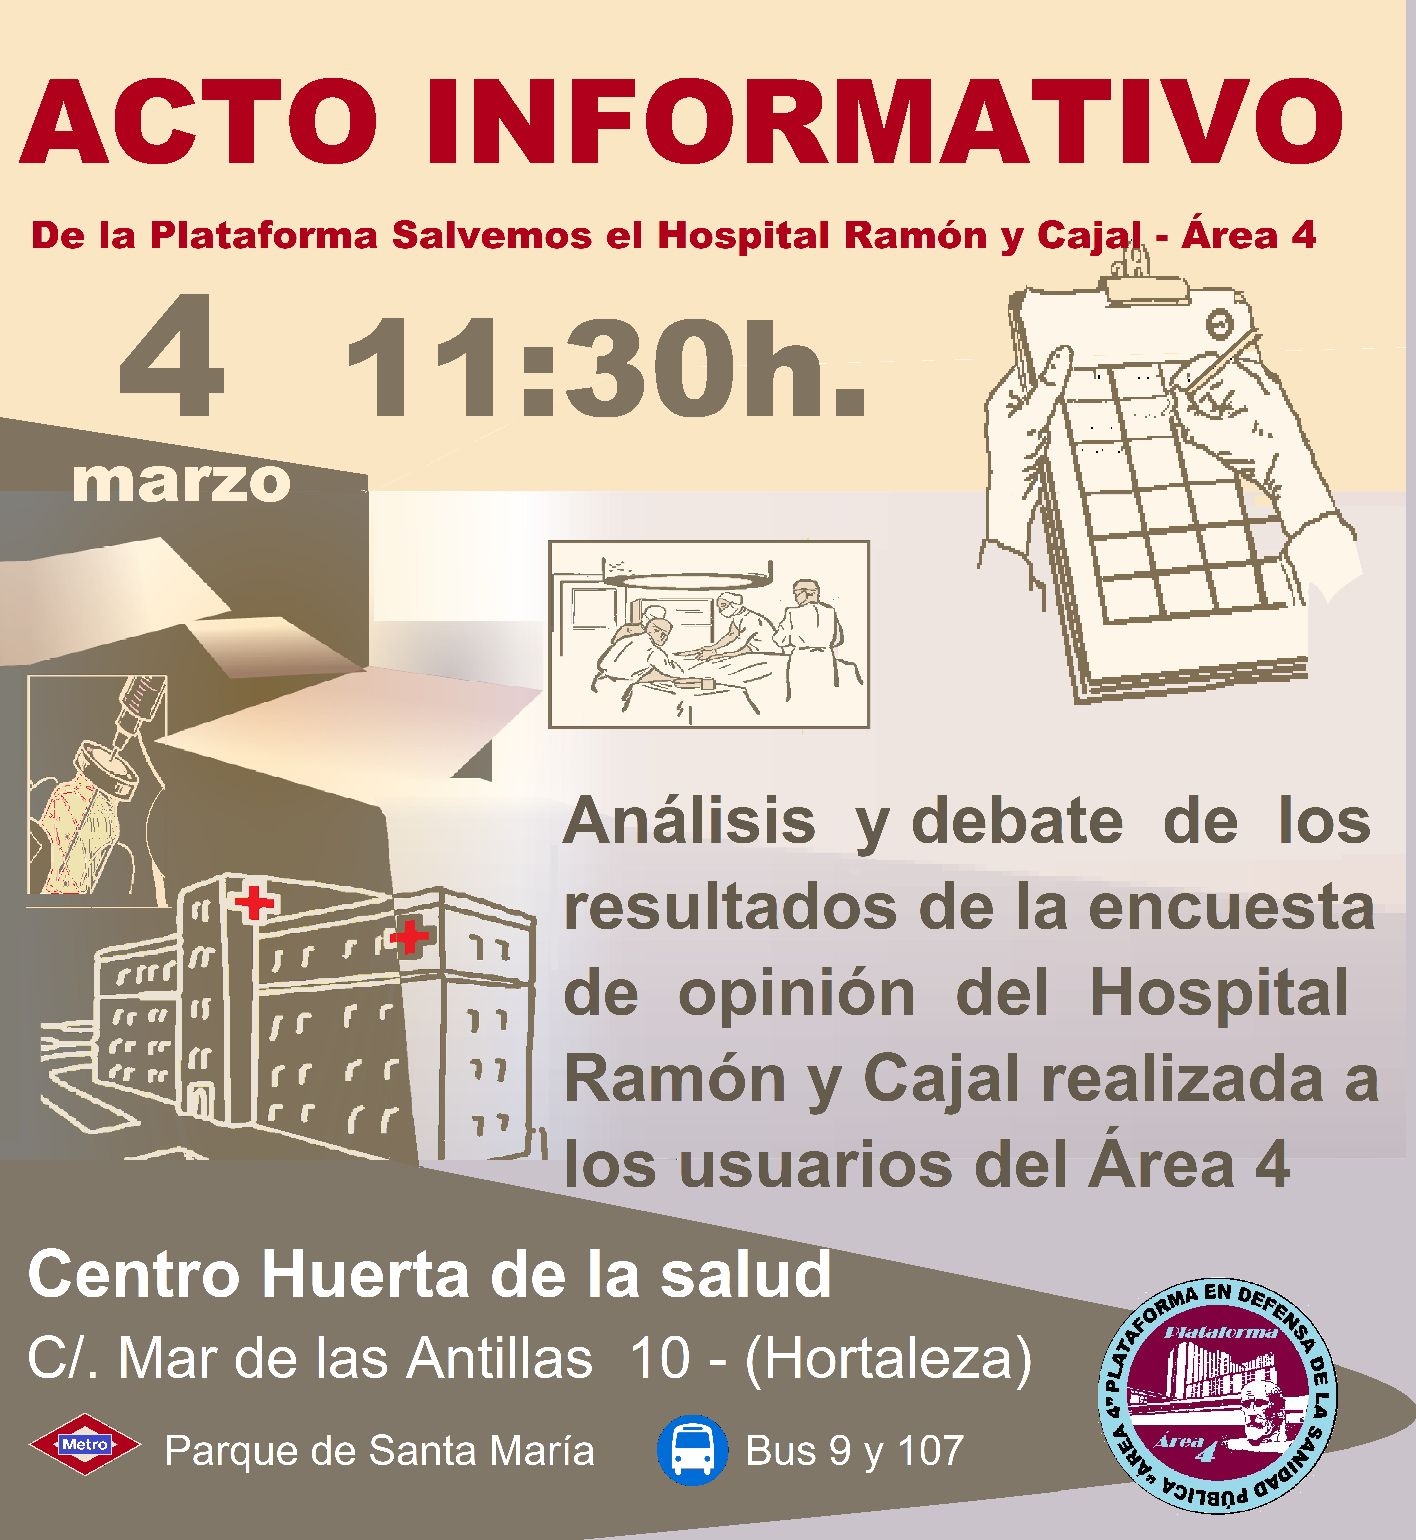 Acto informativo Ramón y Cajal en Hortaleza